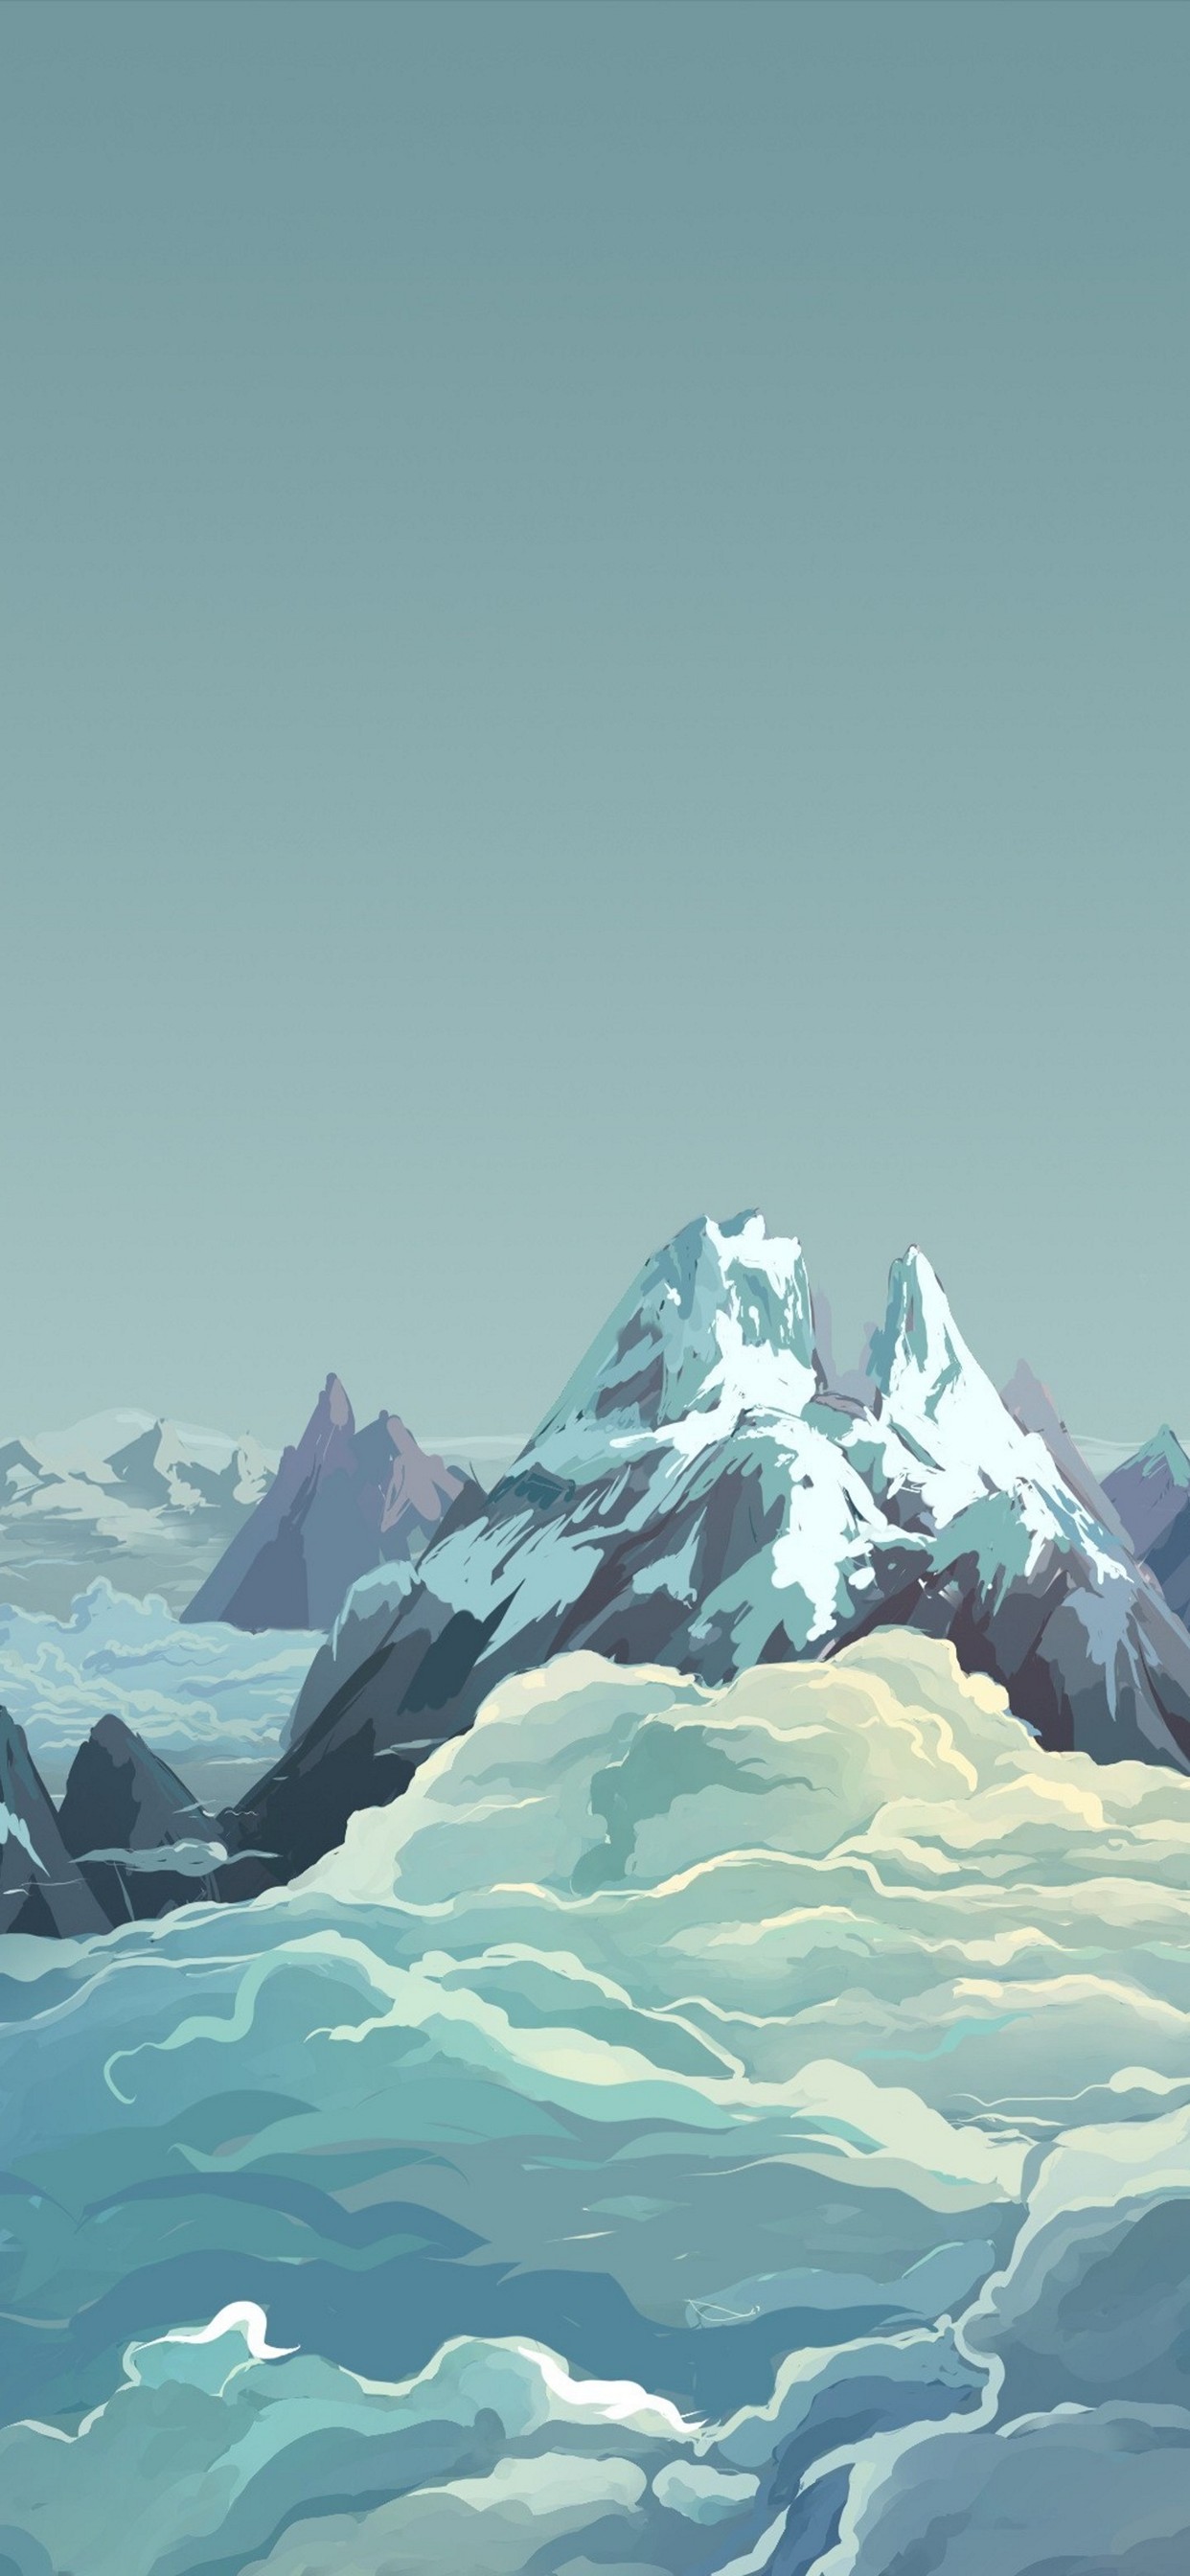 綺麗な雪山と雲海のイラスト Iphone 12 Pro Max スマホ壁紙 待ち受け スマラン